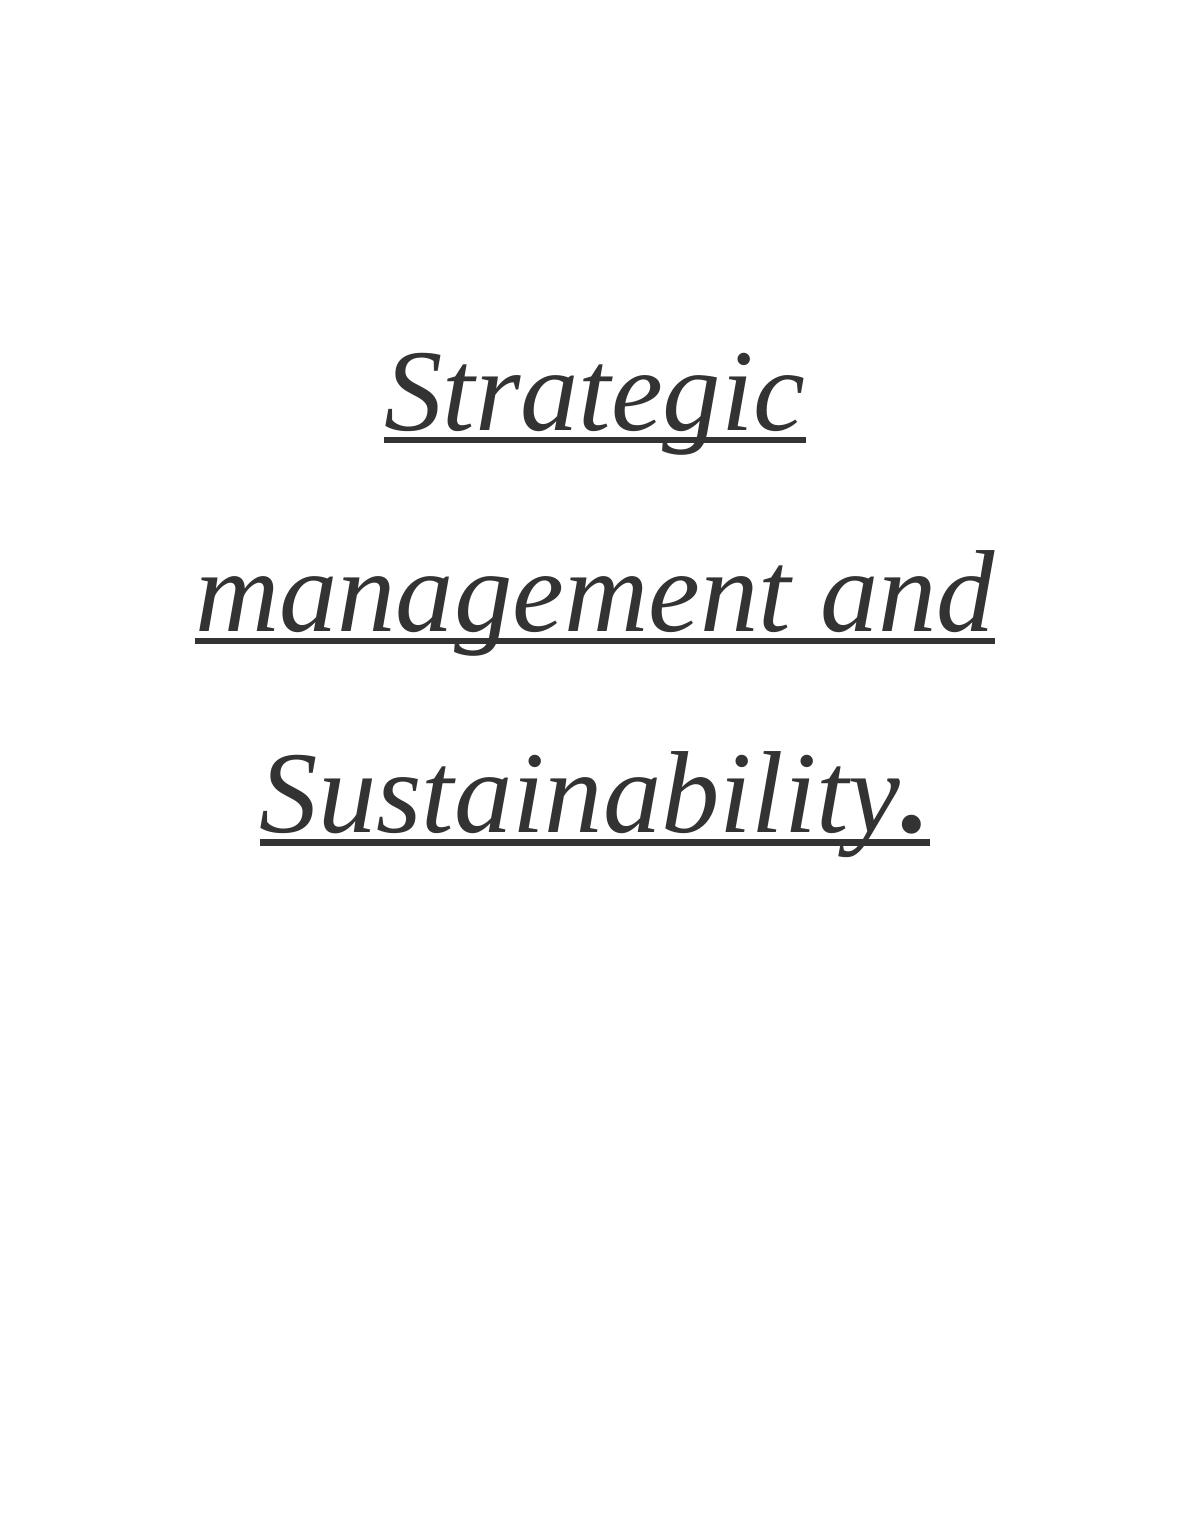 Strategic Management and Sustainability_1